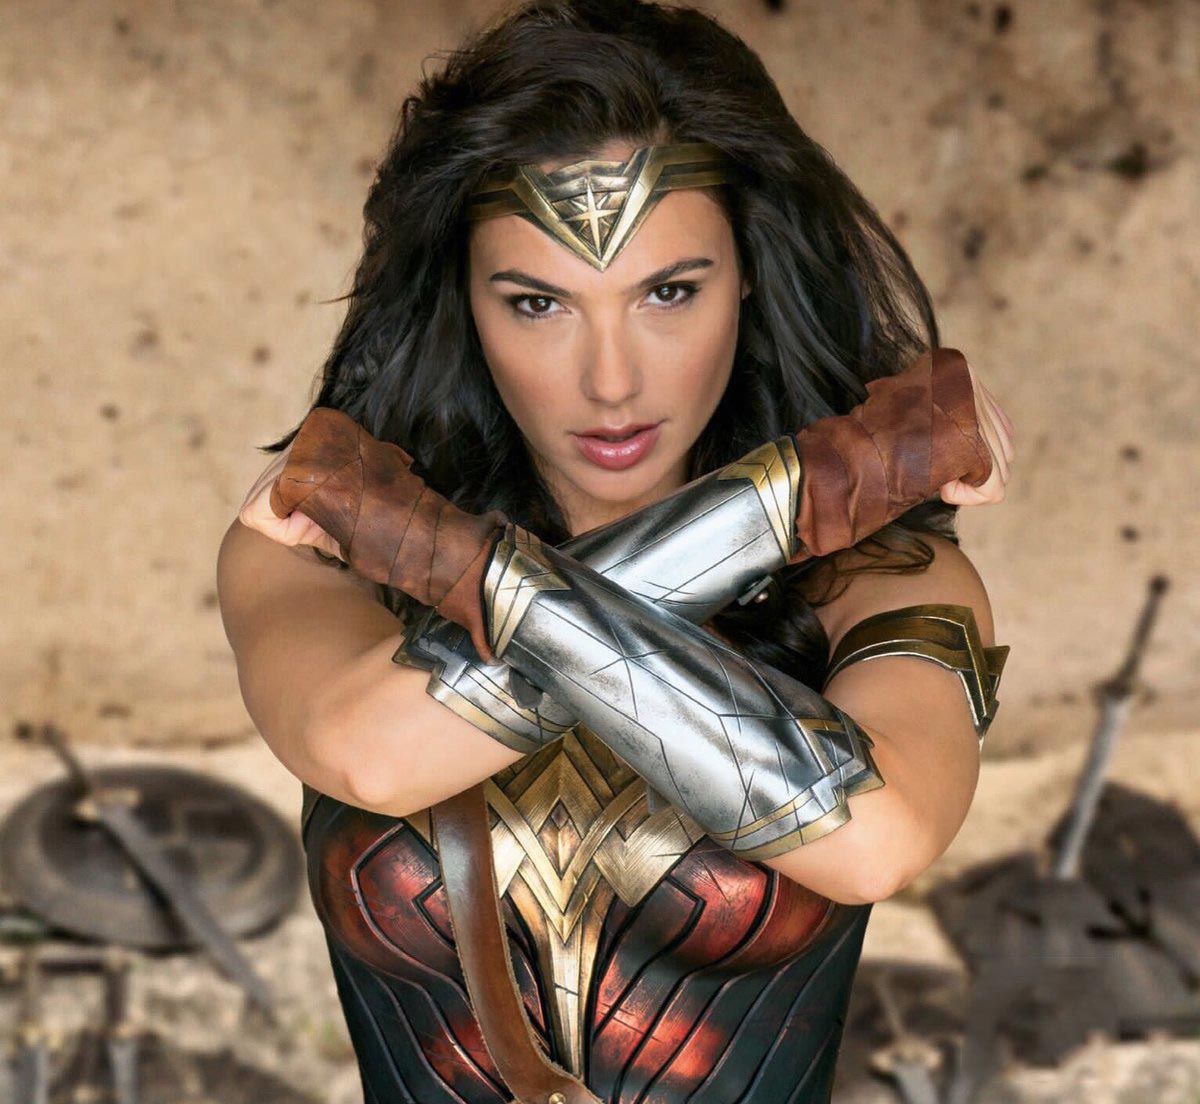 New "Wonder Woman" Pics Emerge | Know It All Joe